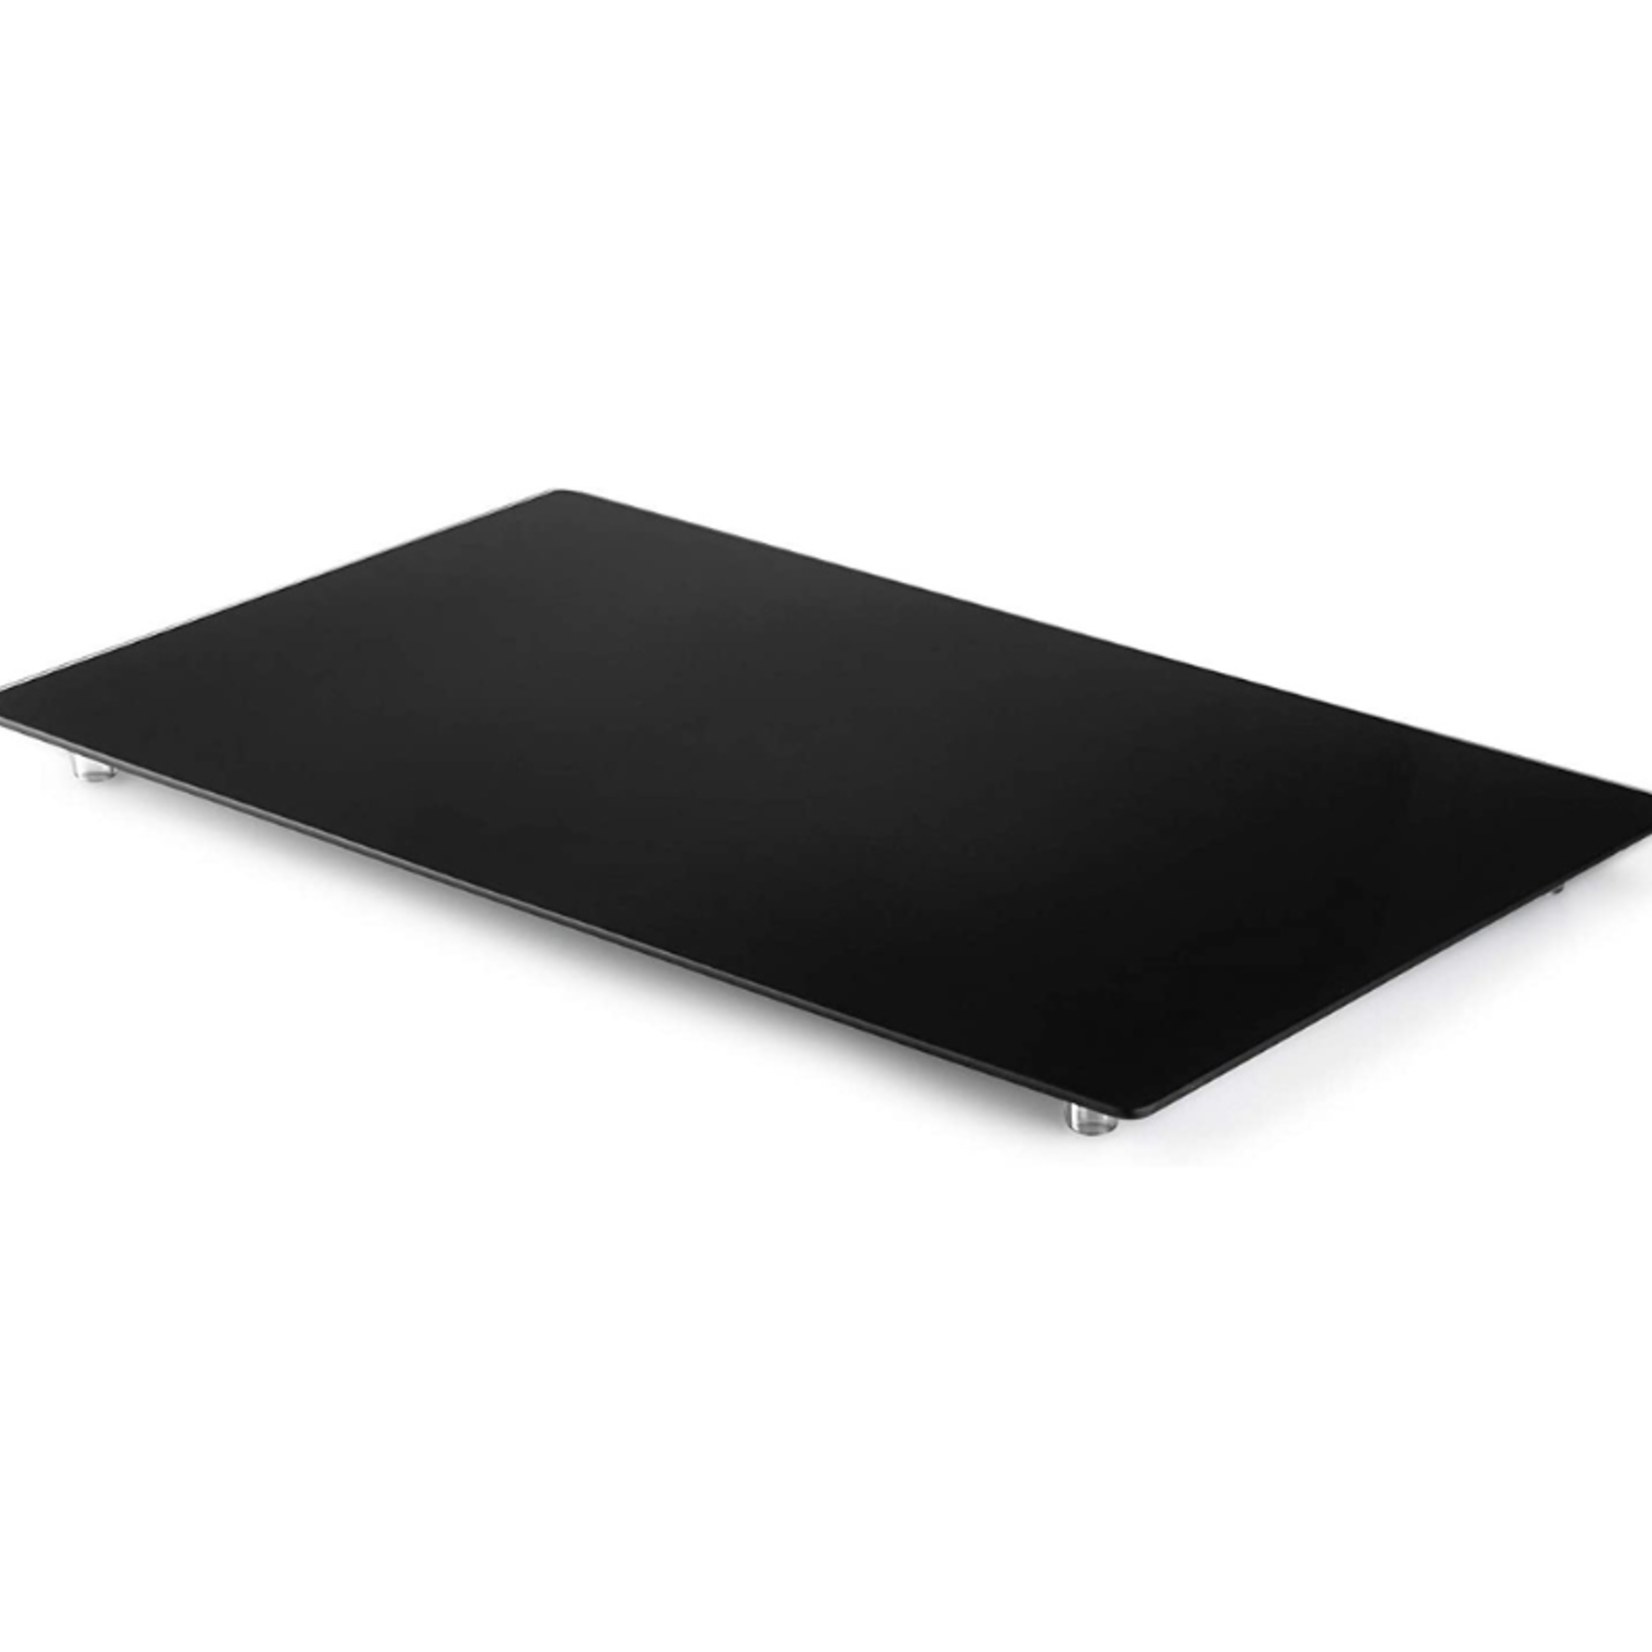 Zafuu Multipurpose Tempered Glass Board- Black